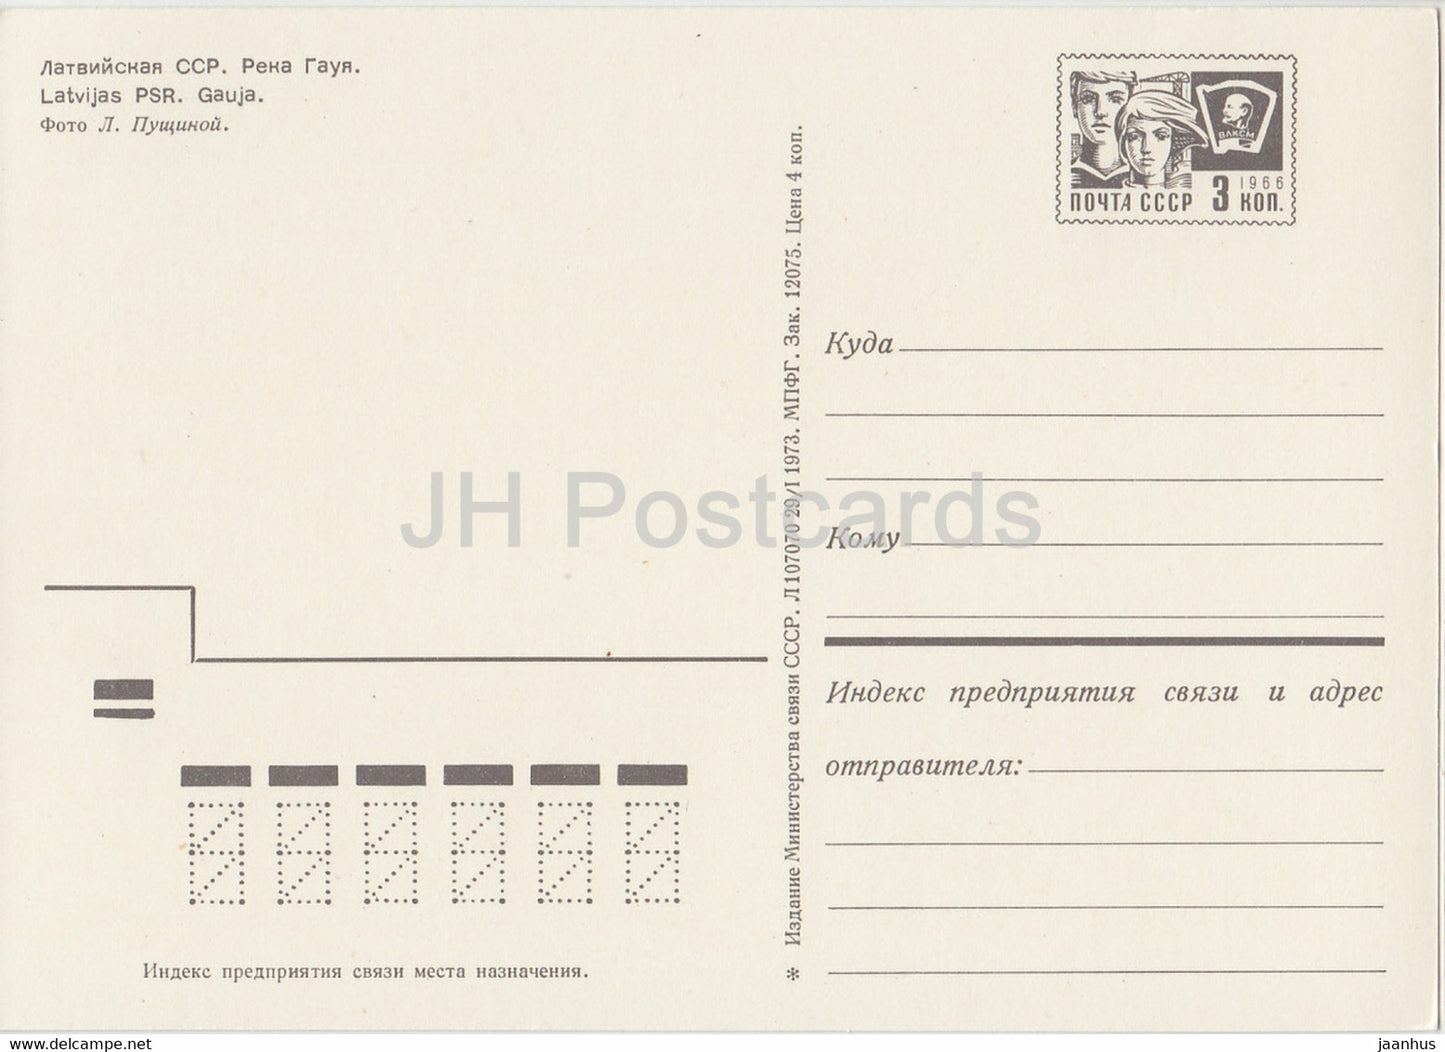 Gauja river - postal stationery - 1973 - Latvia USSR - unused